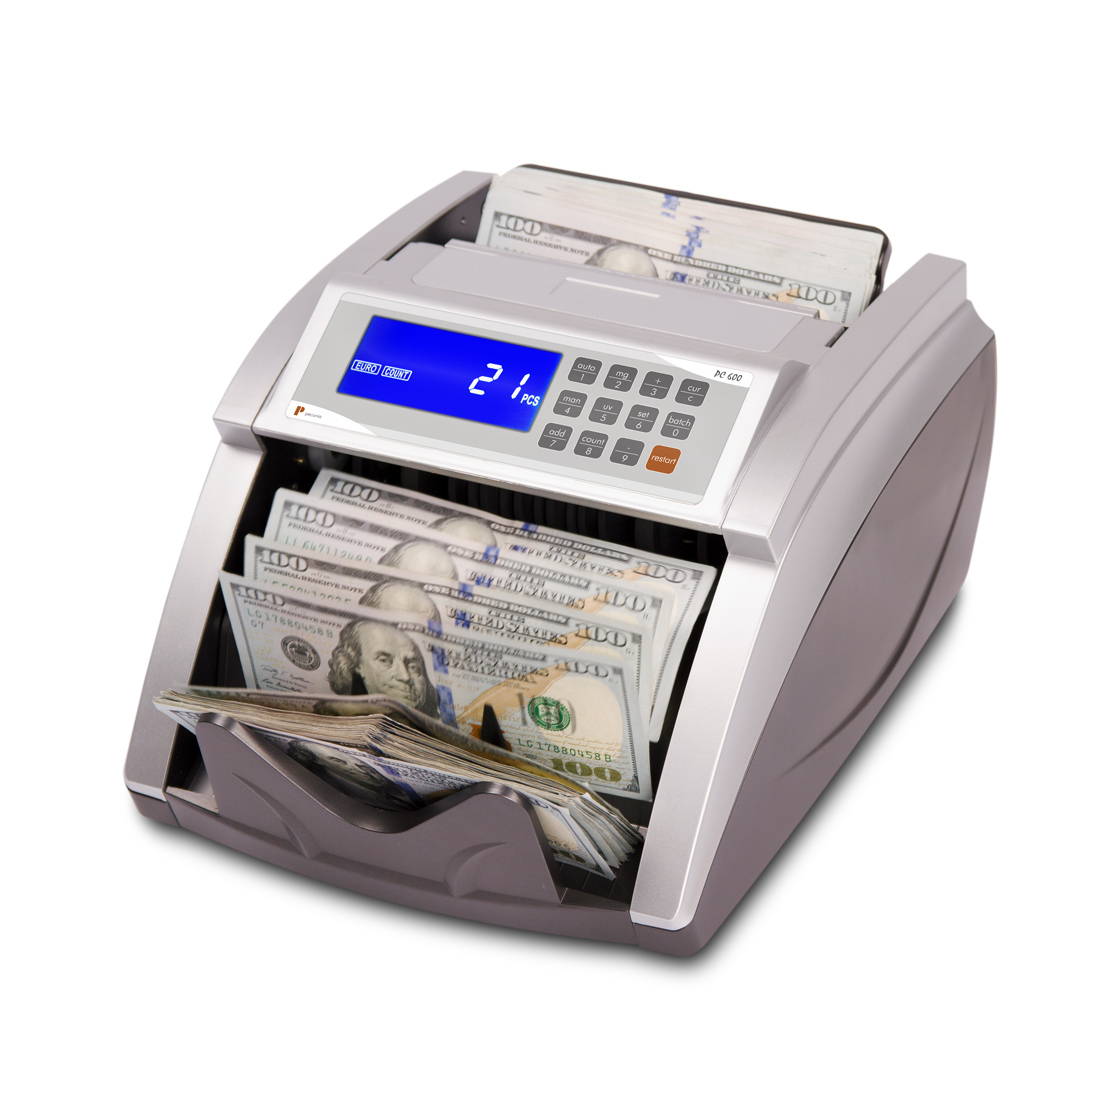 Banknote counters Pecunia PC 600 E2